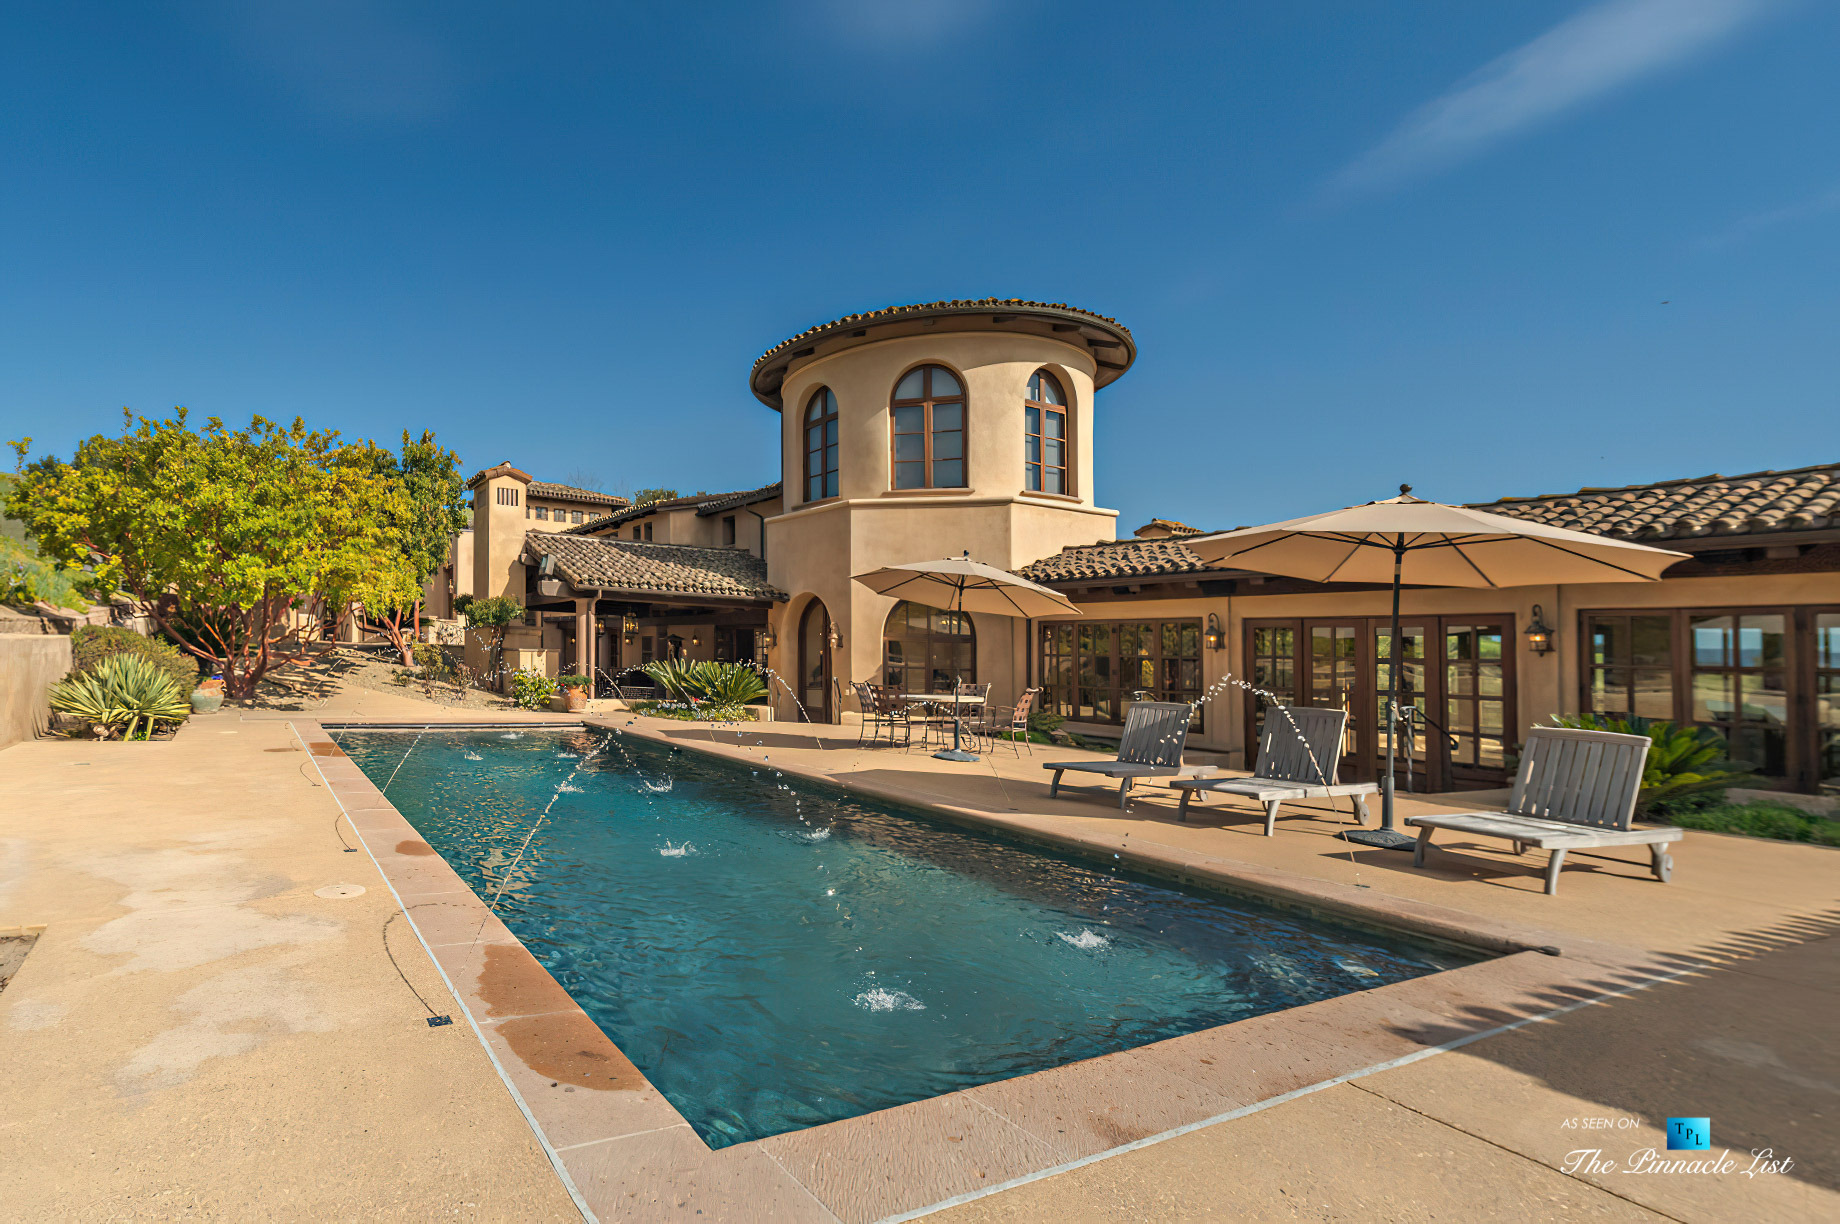 Spectacular 251 Acre Twin Oak Ranch - 2667 Via De Los Ranchos, Los Olivos, CA, USA - Italian Villa Residence Exterior Pool